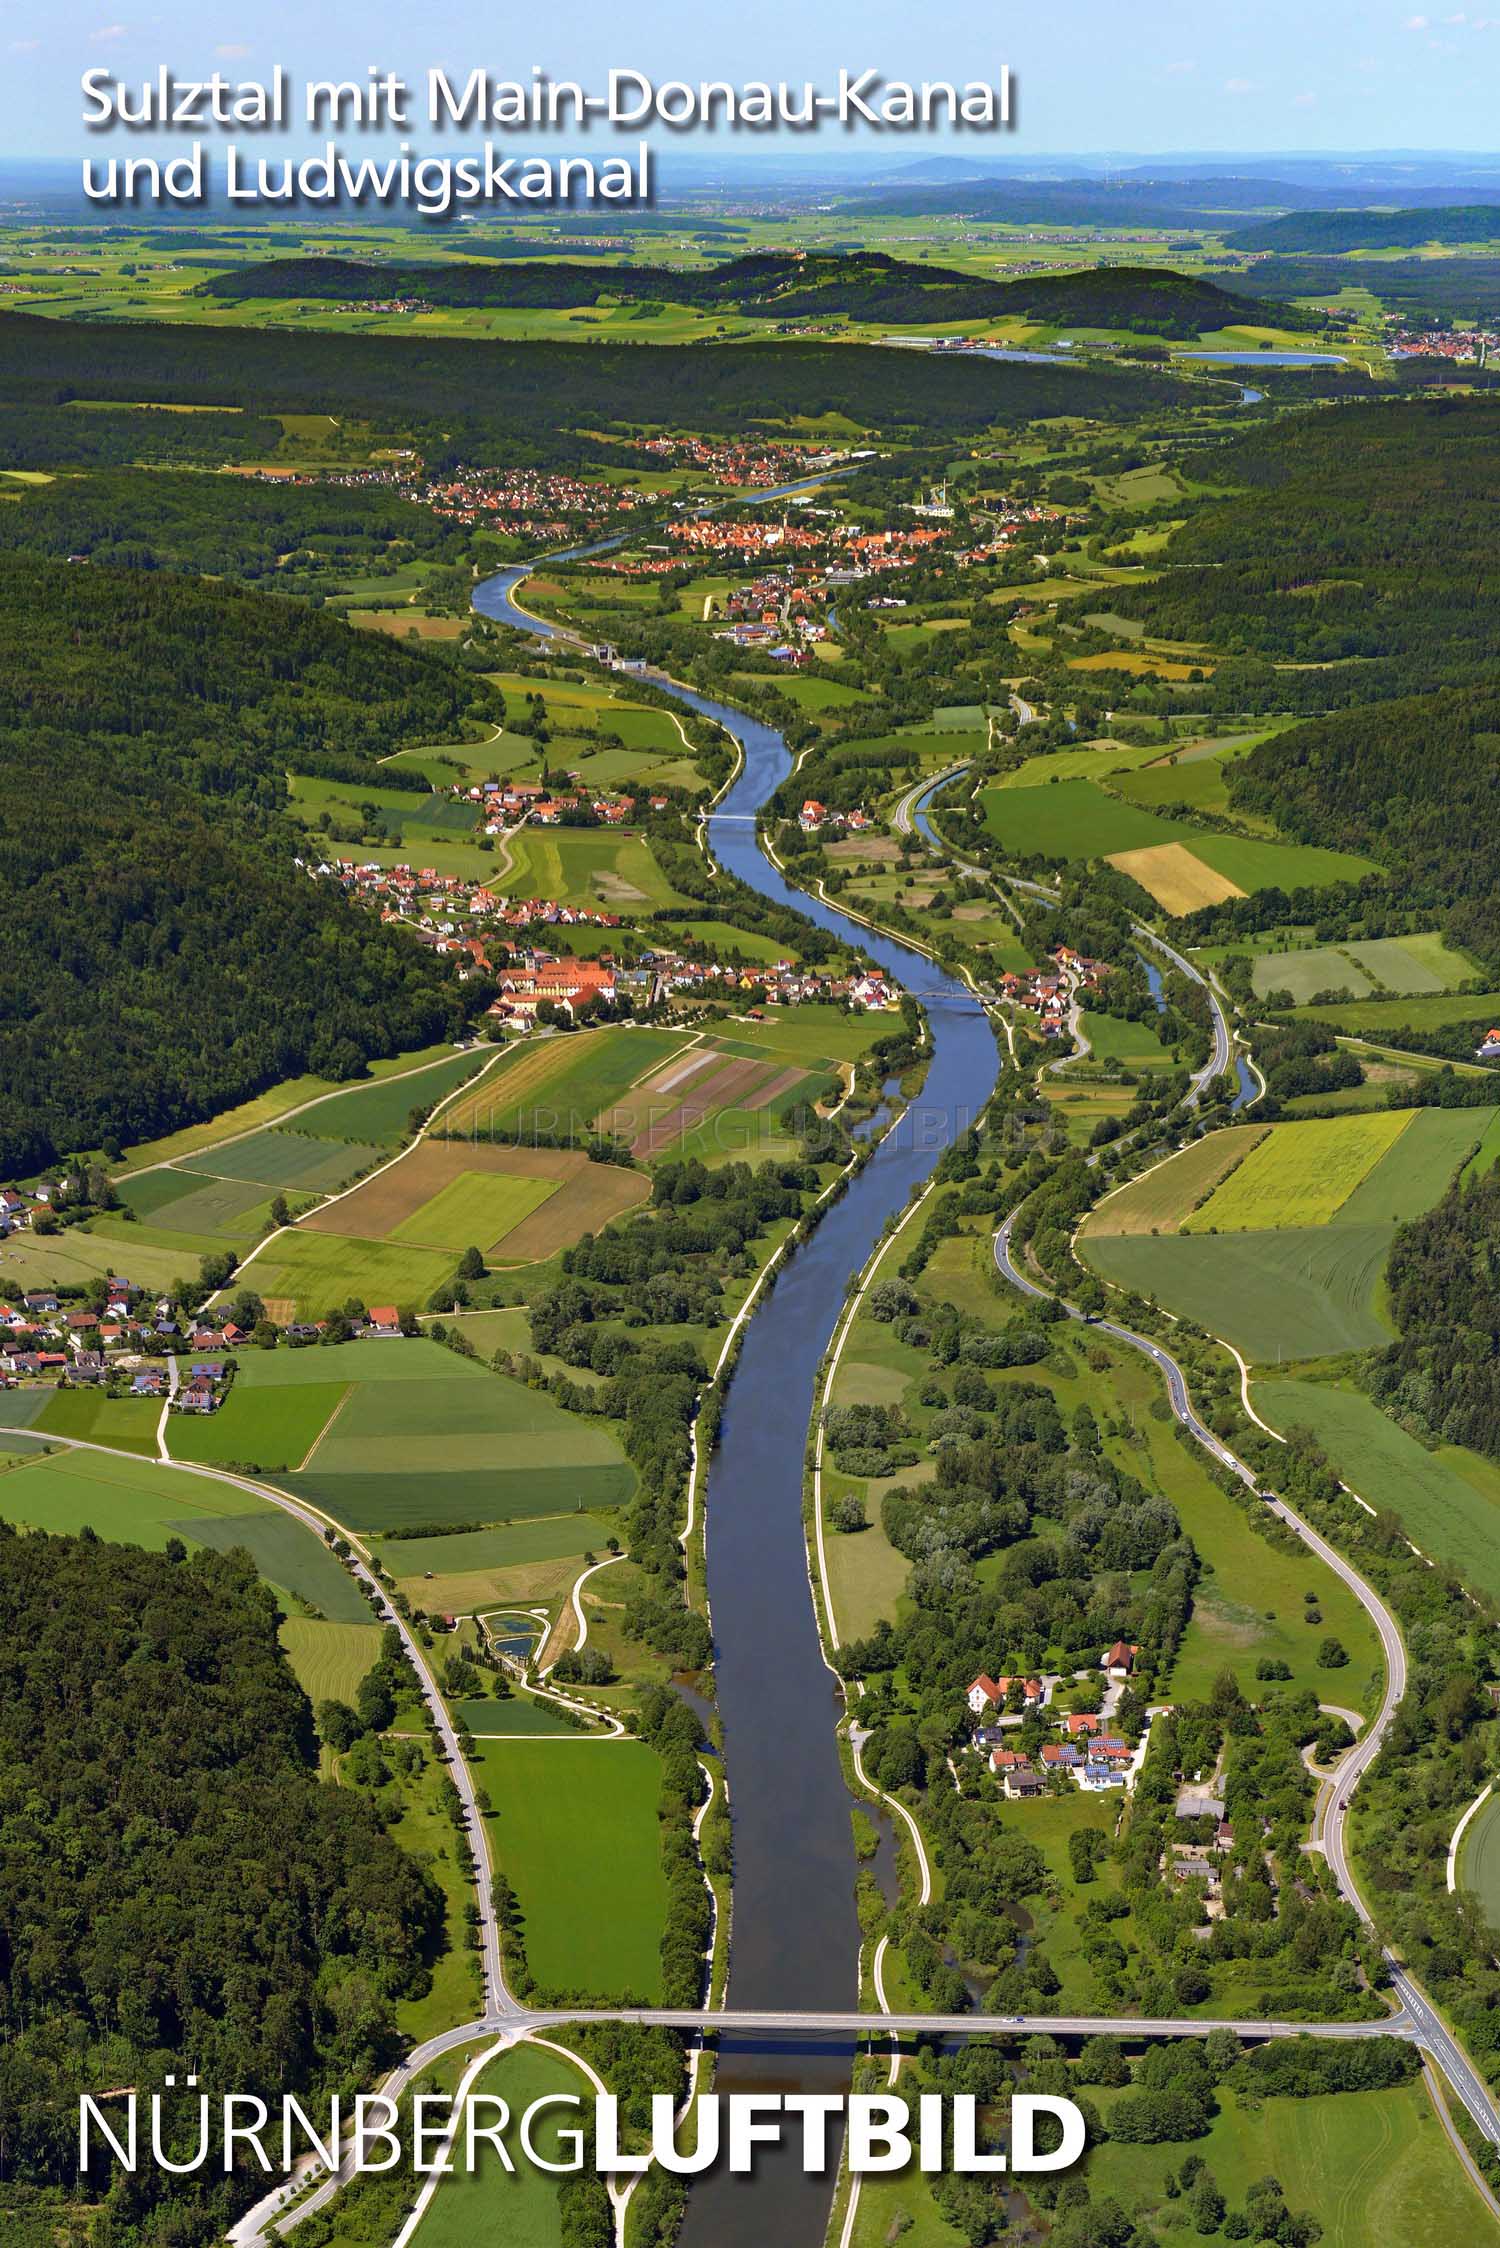 Sulztal mit Main-Donau-Kanal und Ludwigskanal, Luftbild